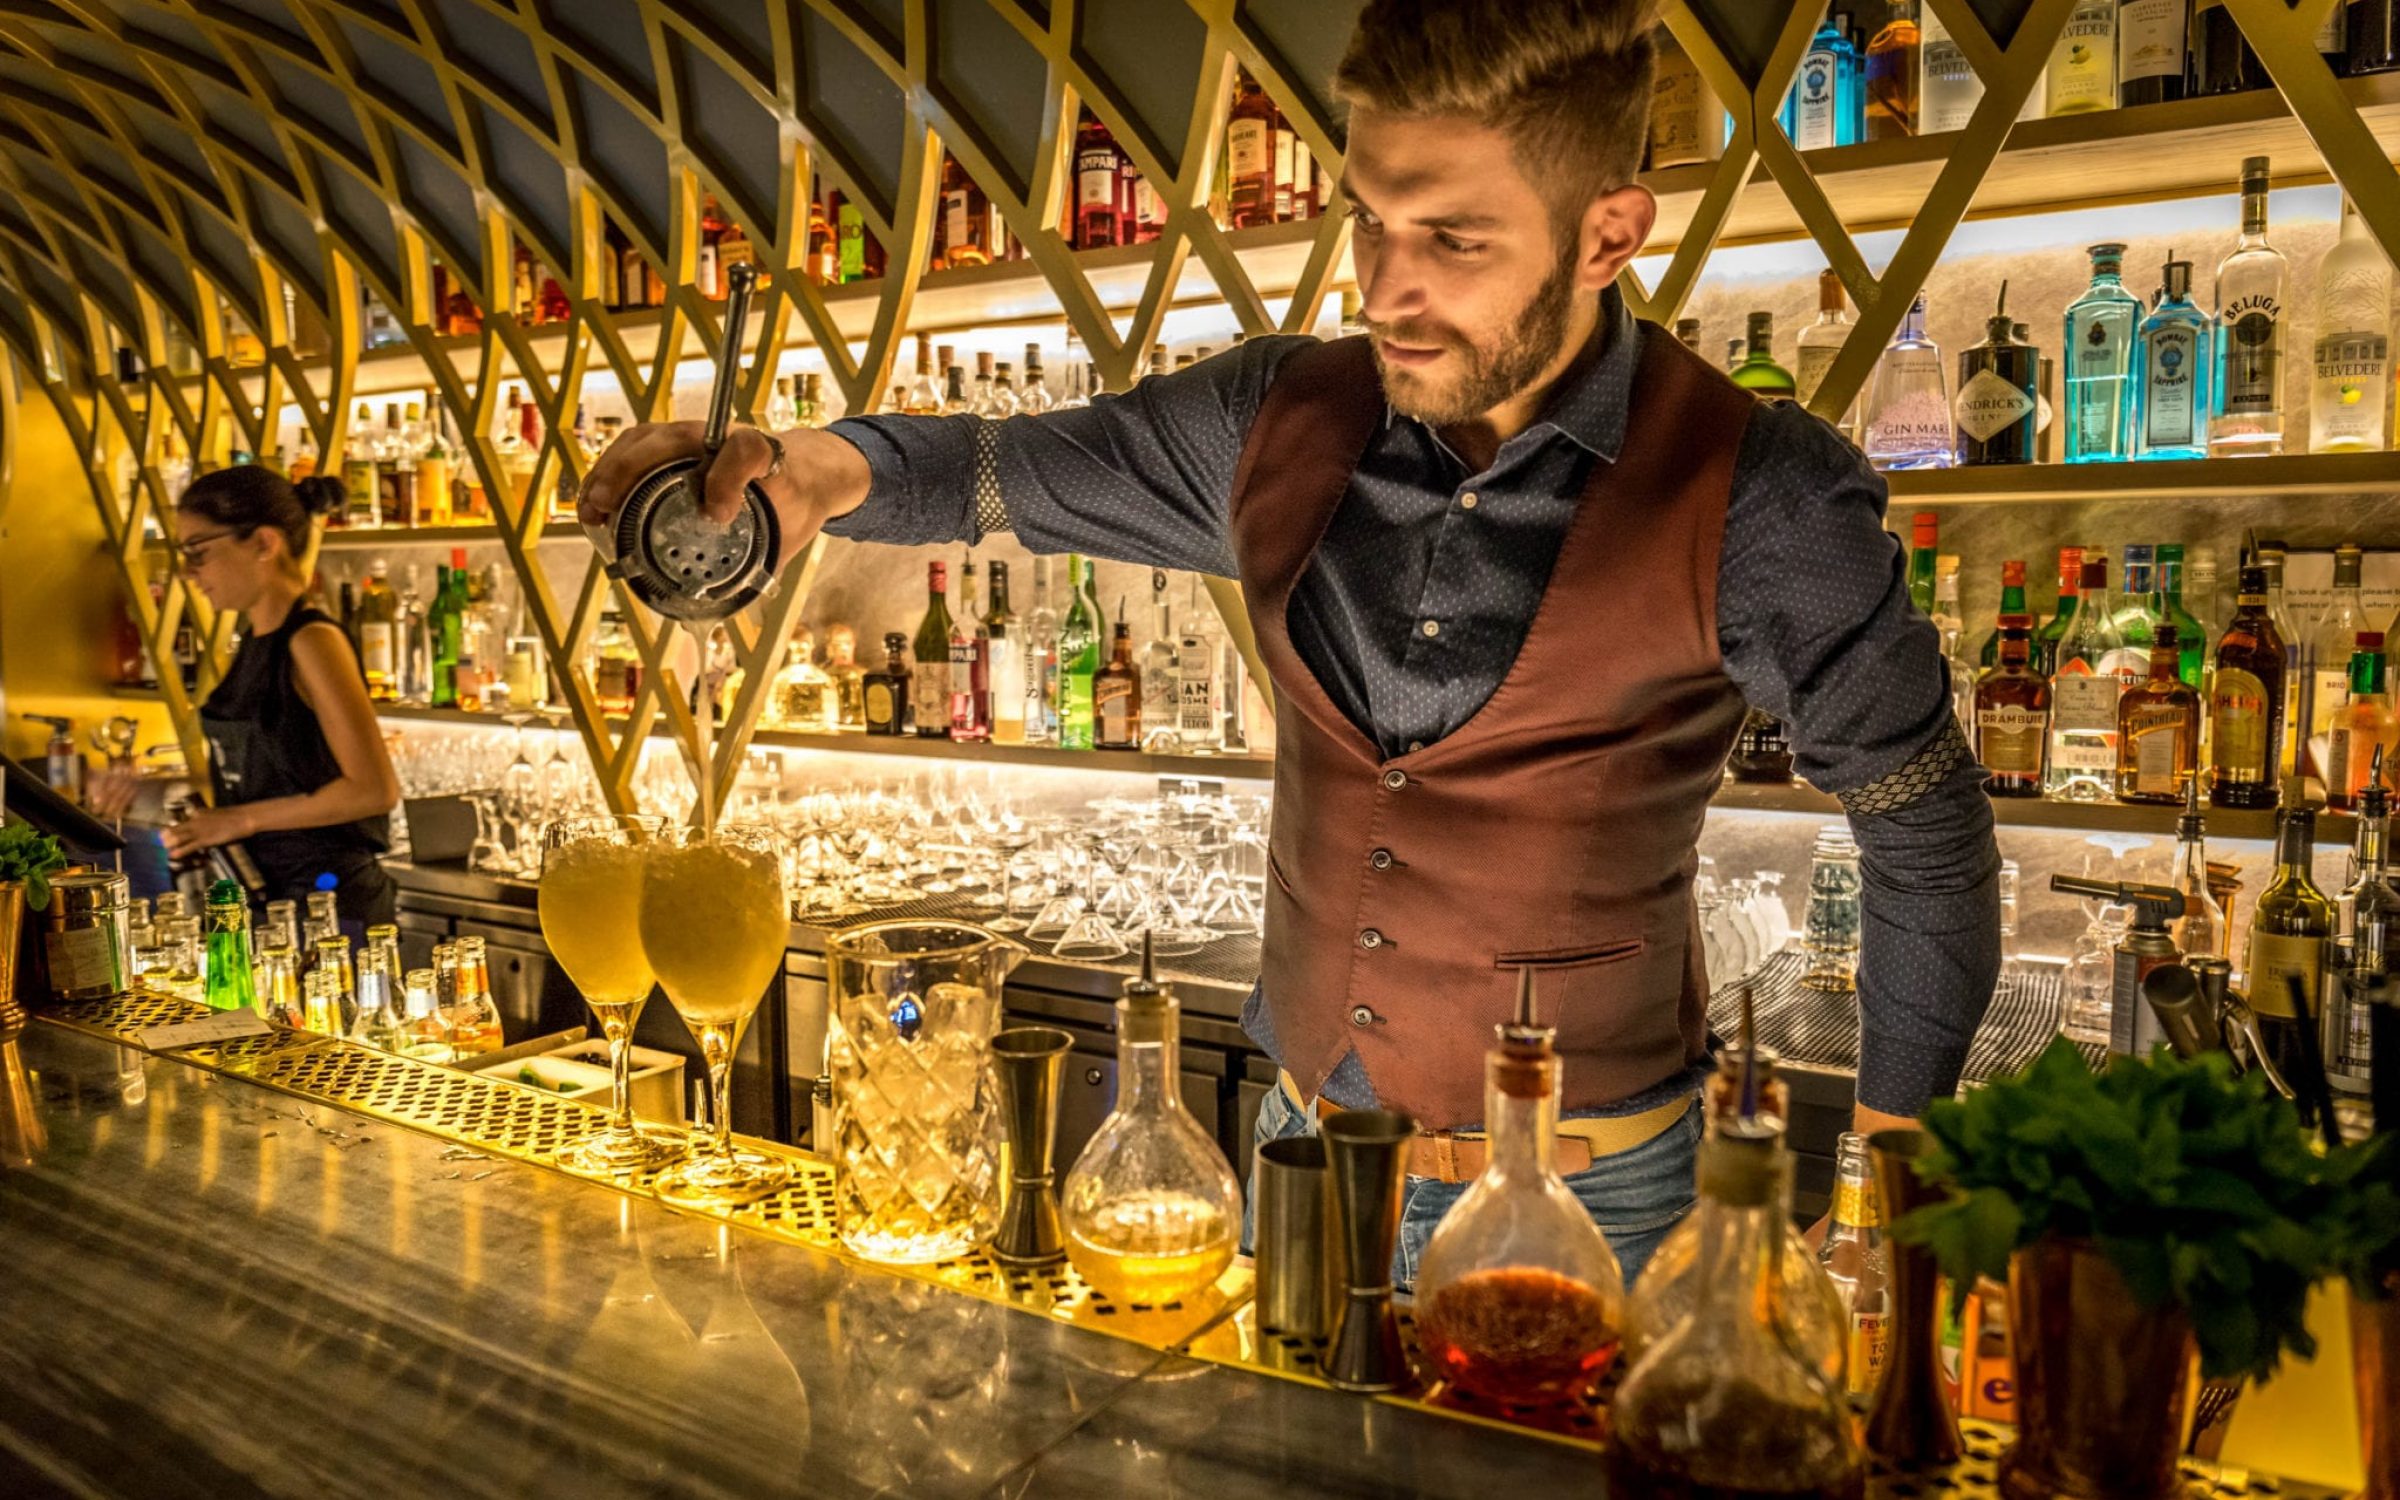 A smartly dressed barman serving cocktails